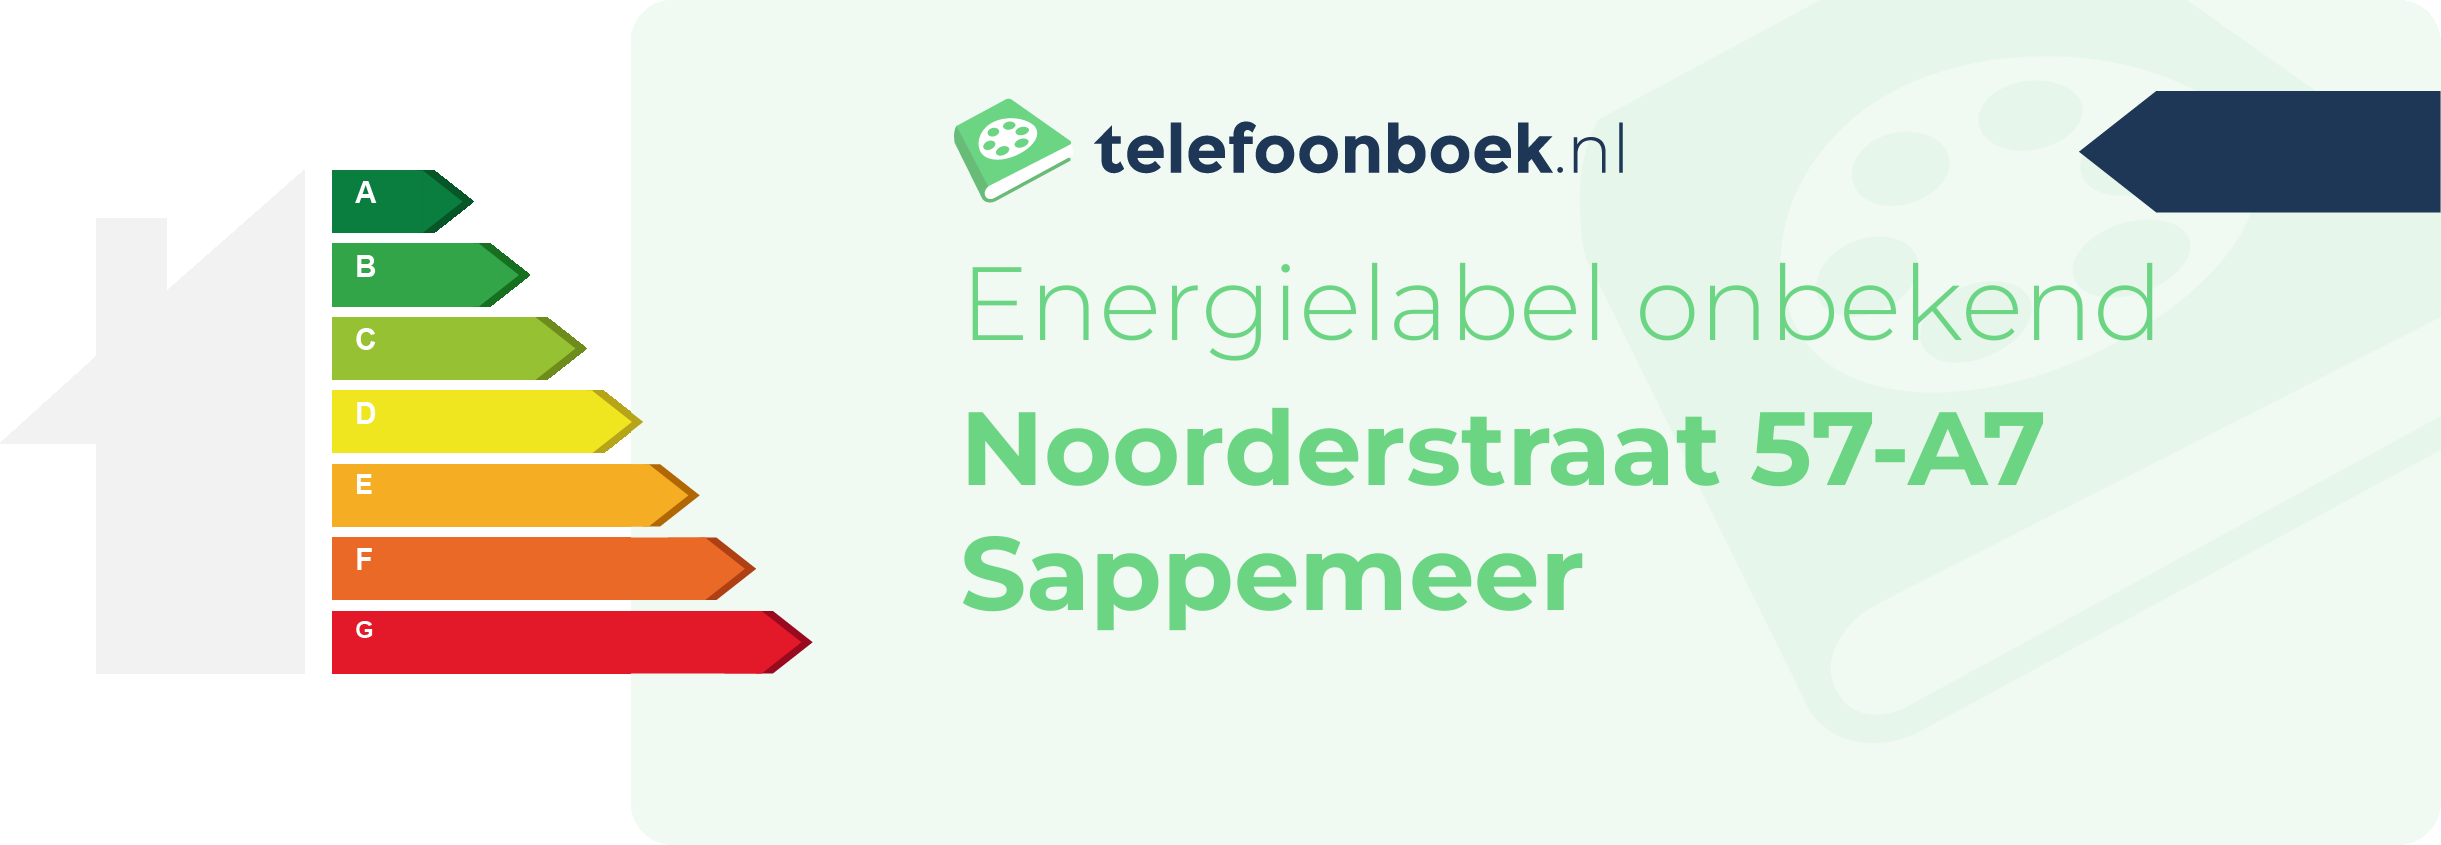 Energielabel Noorderstraat 57-A7 Sappemeer